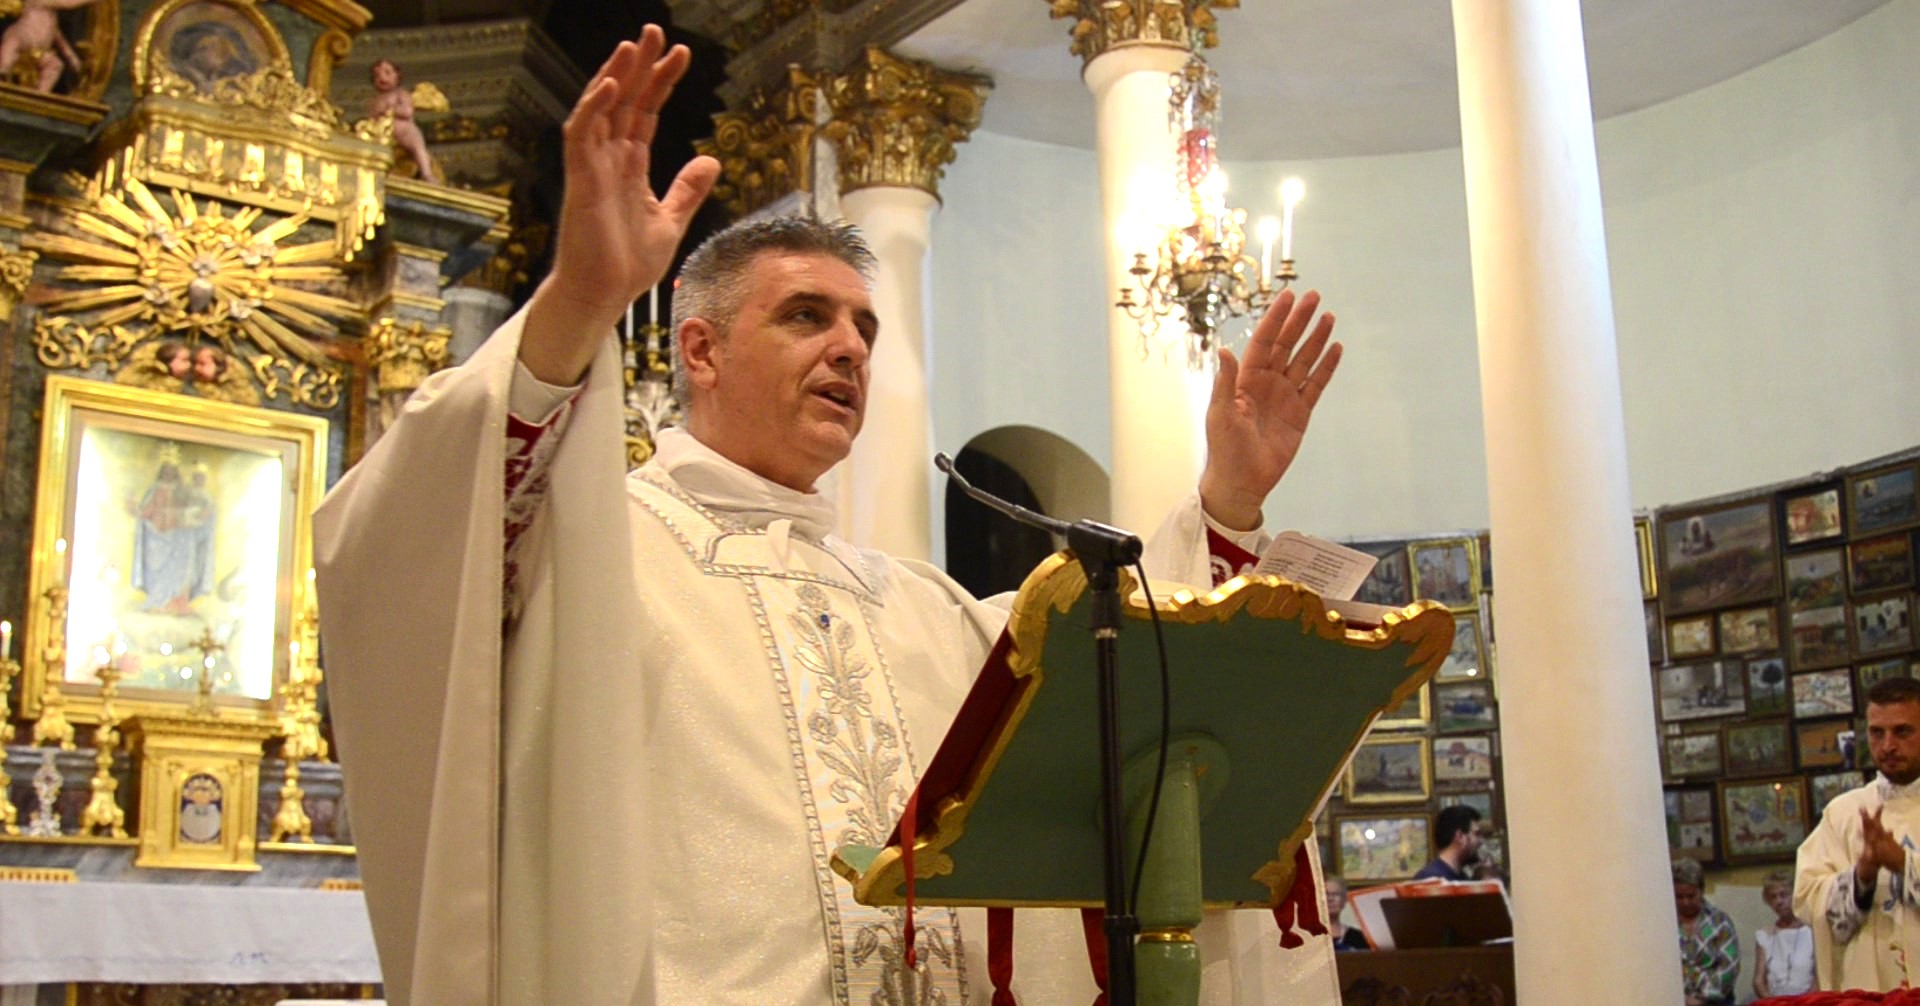 ARCIDIOCESI DI VERCELLI – Don Stefano Bedello è il nuovo Vicario Generale